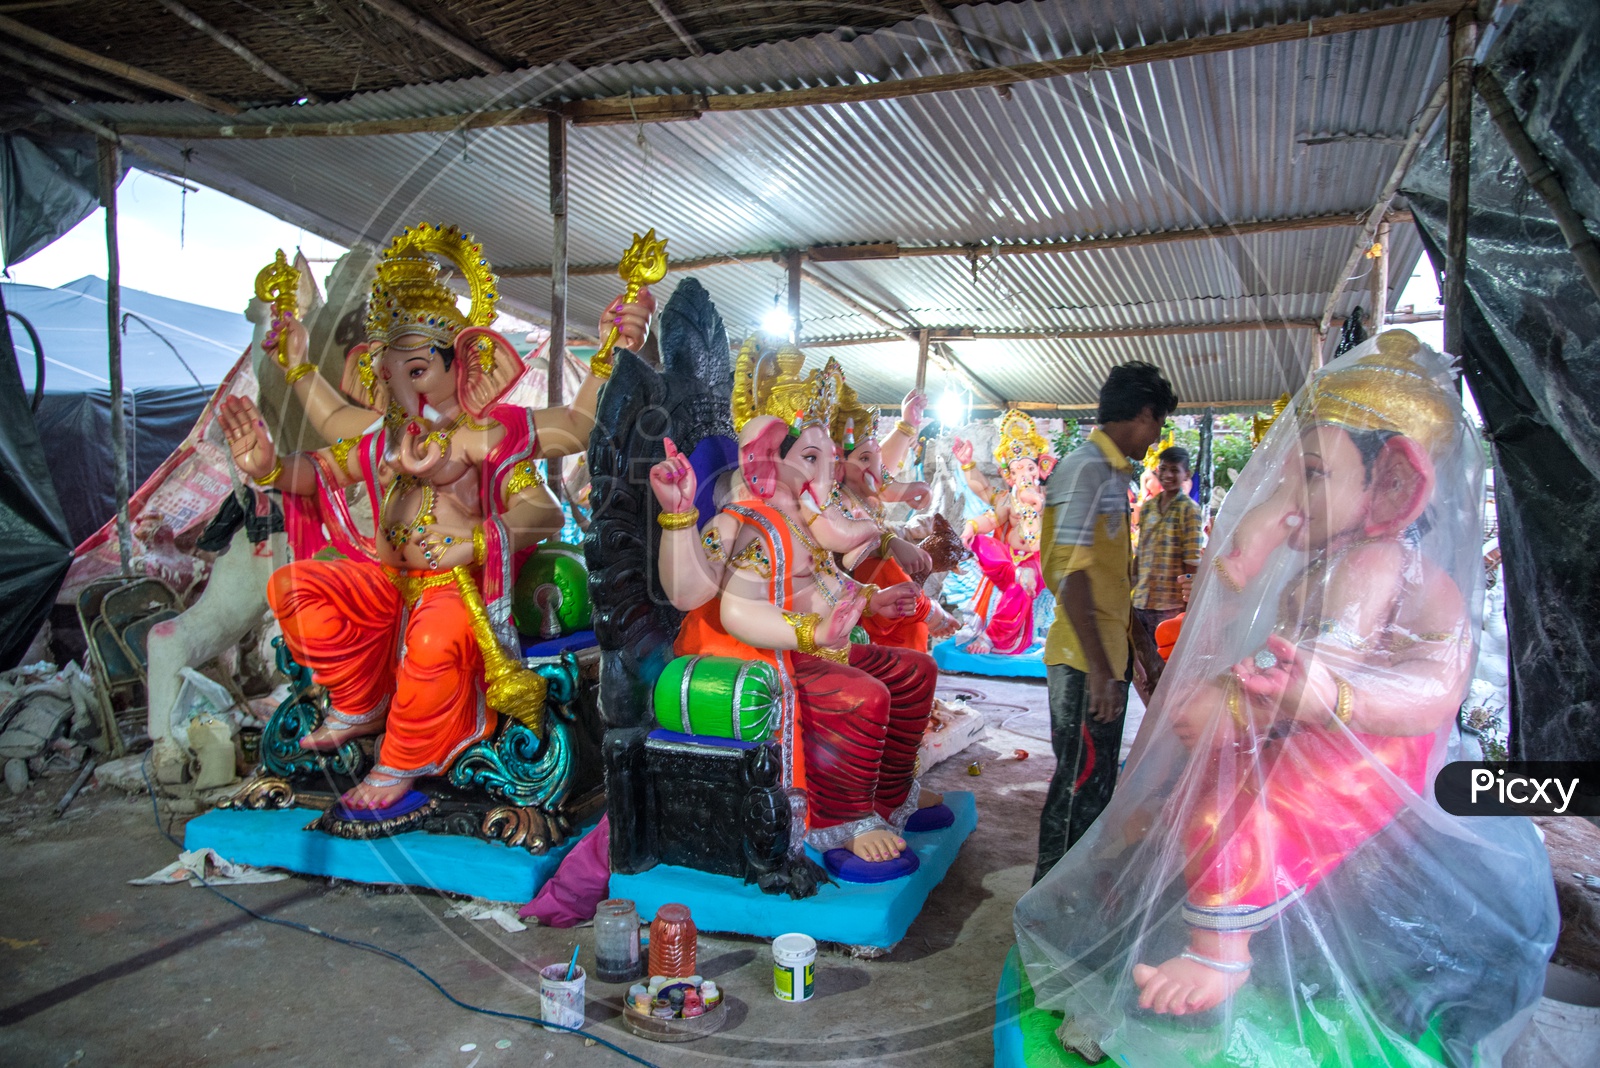 Indian Artisans alongside the Lord Ganesha Idols